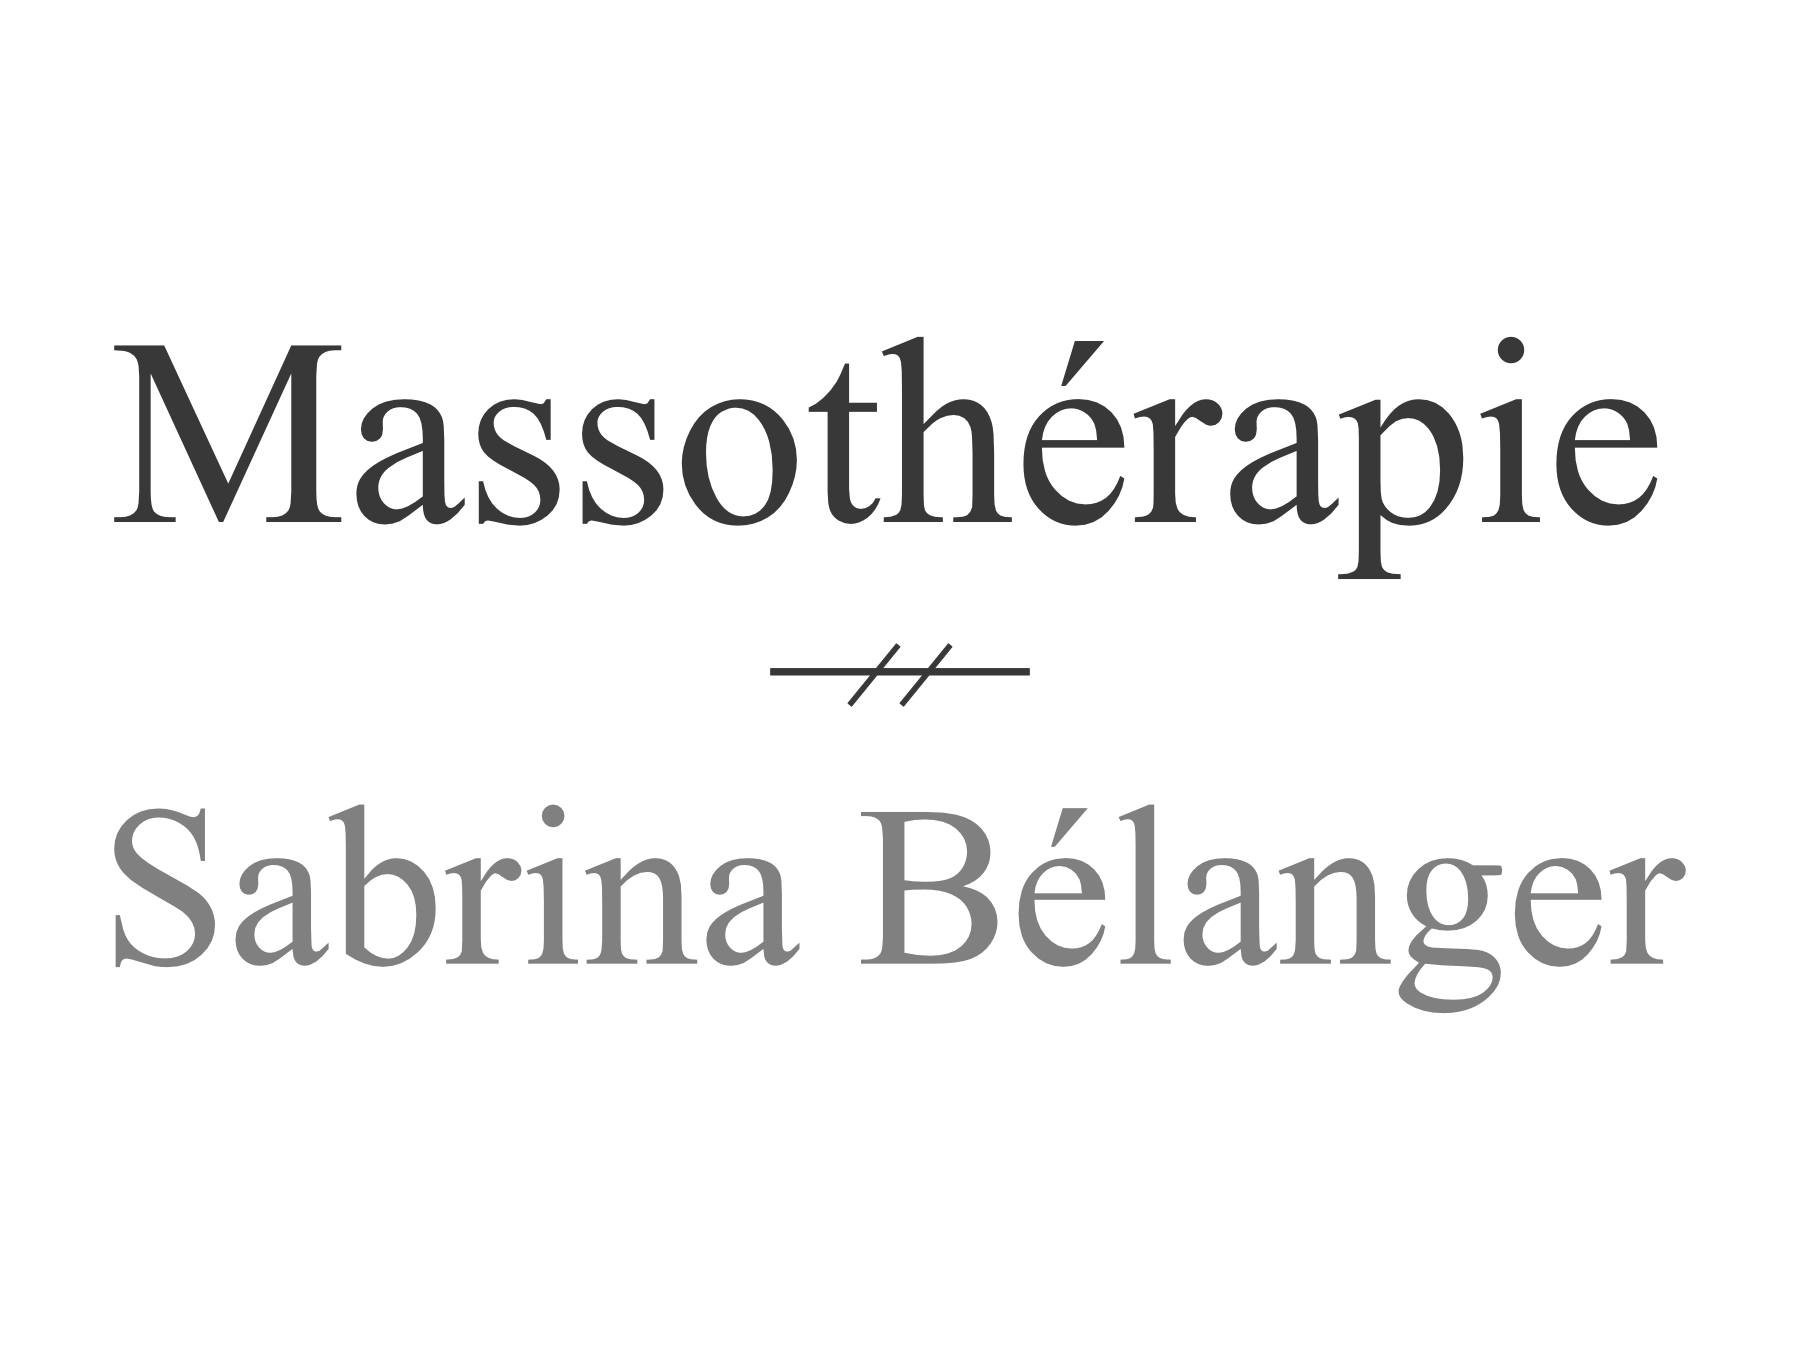 Massothérapie Sabrina Bélanger font confiance au chiropraticien à Québec Pierre-Marc Beaudoin de la clinique Chiropratique Actif. C'est pourquoi Massothérapie Sabrina Bélanger est devenue un partenaire de choix avec le chiropraticien Pierre-Marc Beaudoin dans la région de Québec.